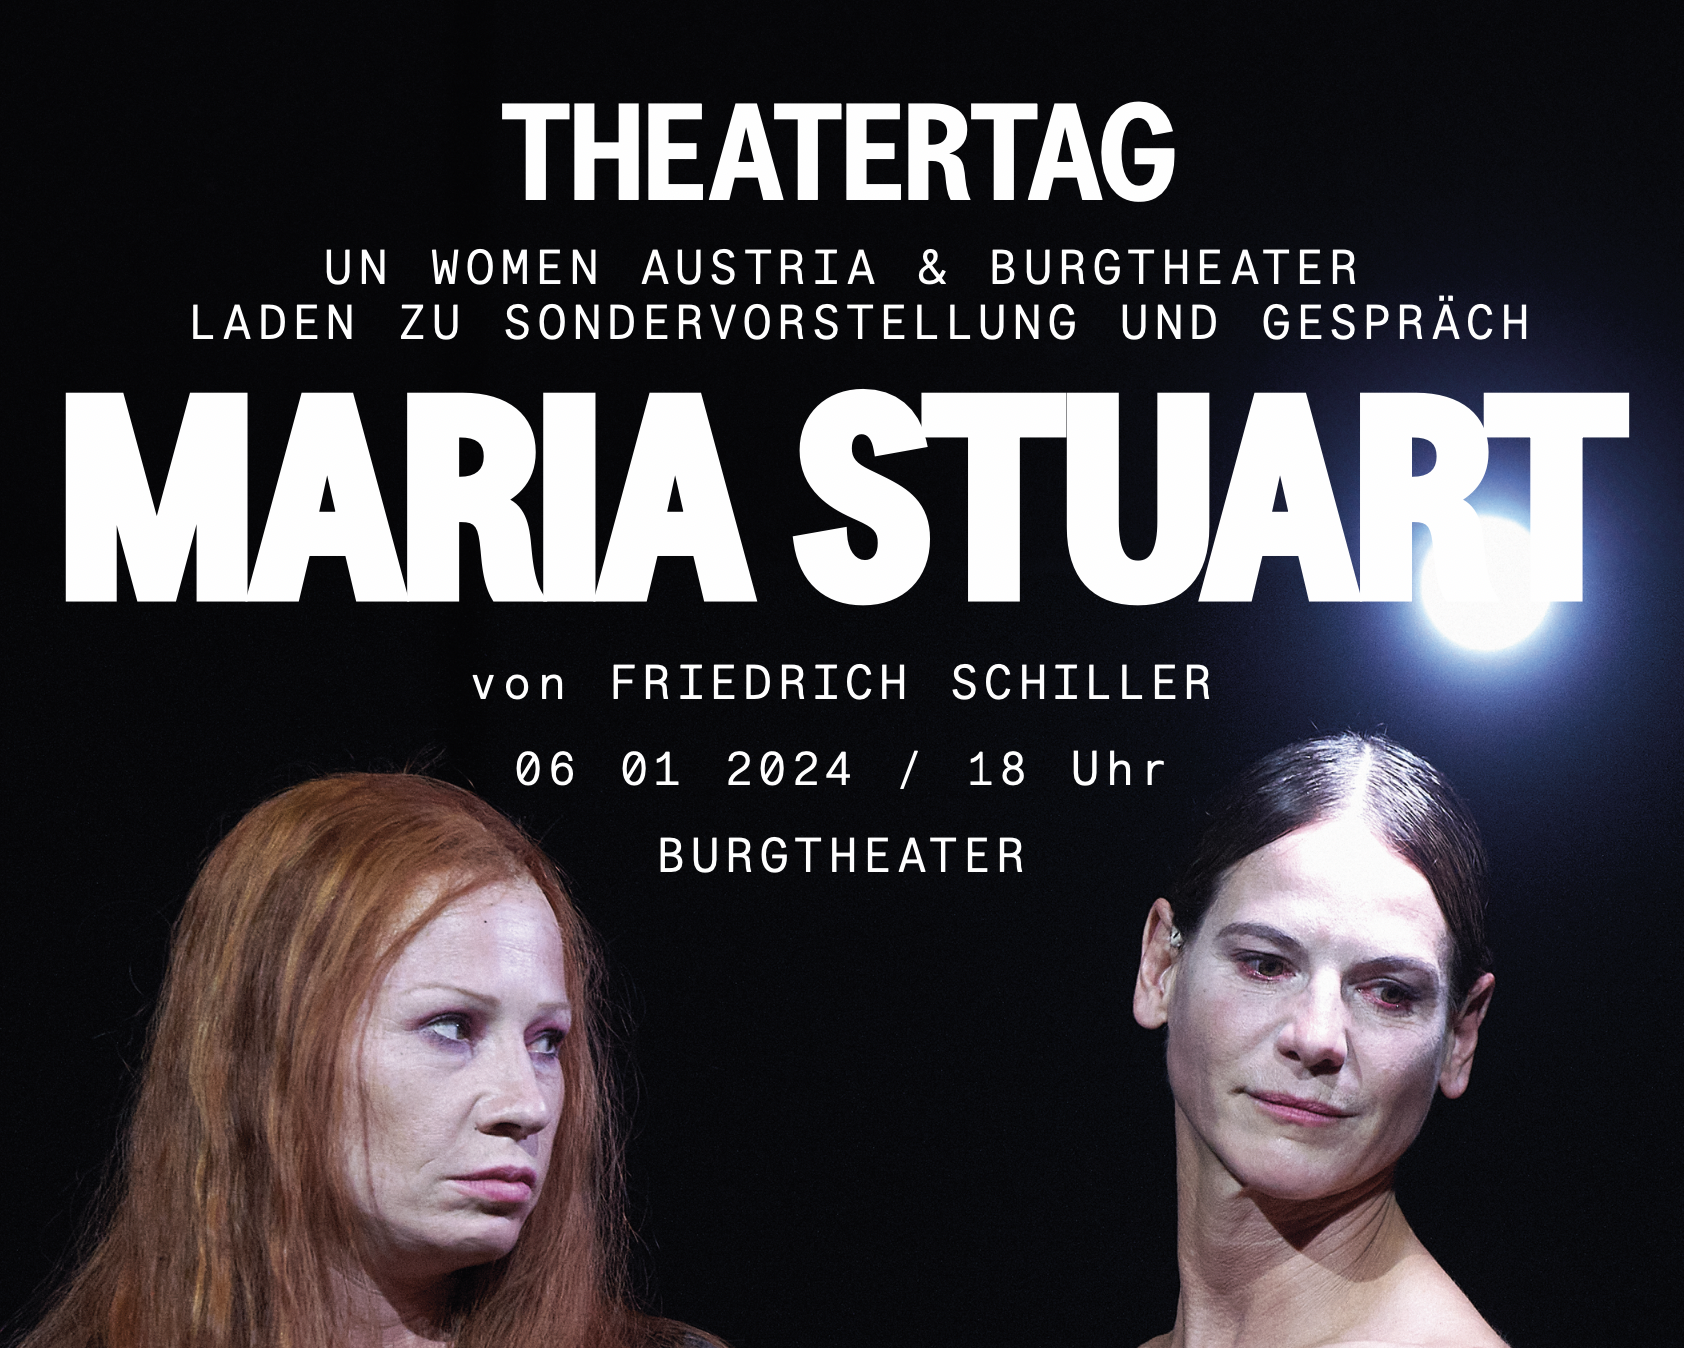 Burgtheater Theatertag UN Women